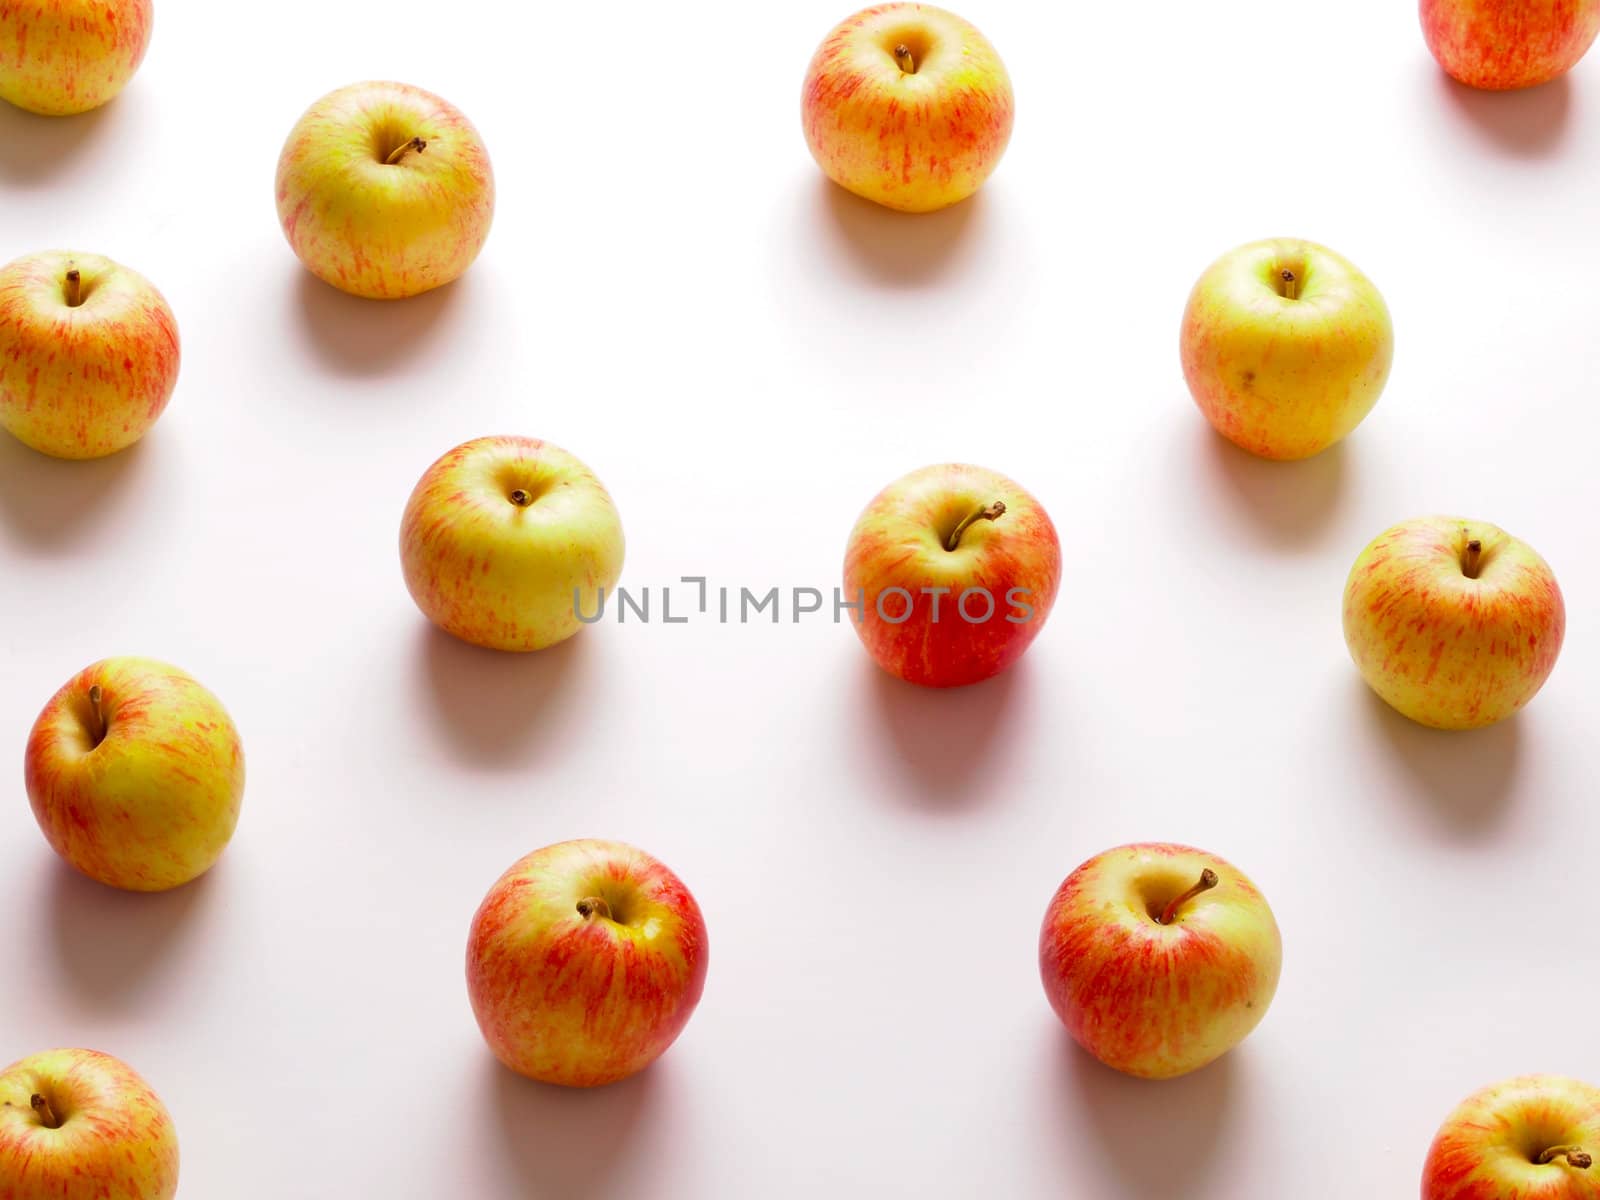 red apples by zkruger